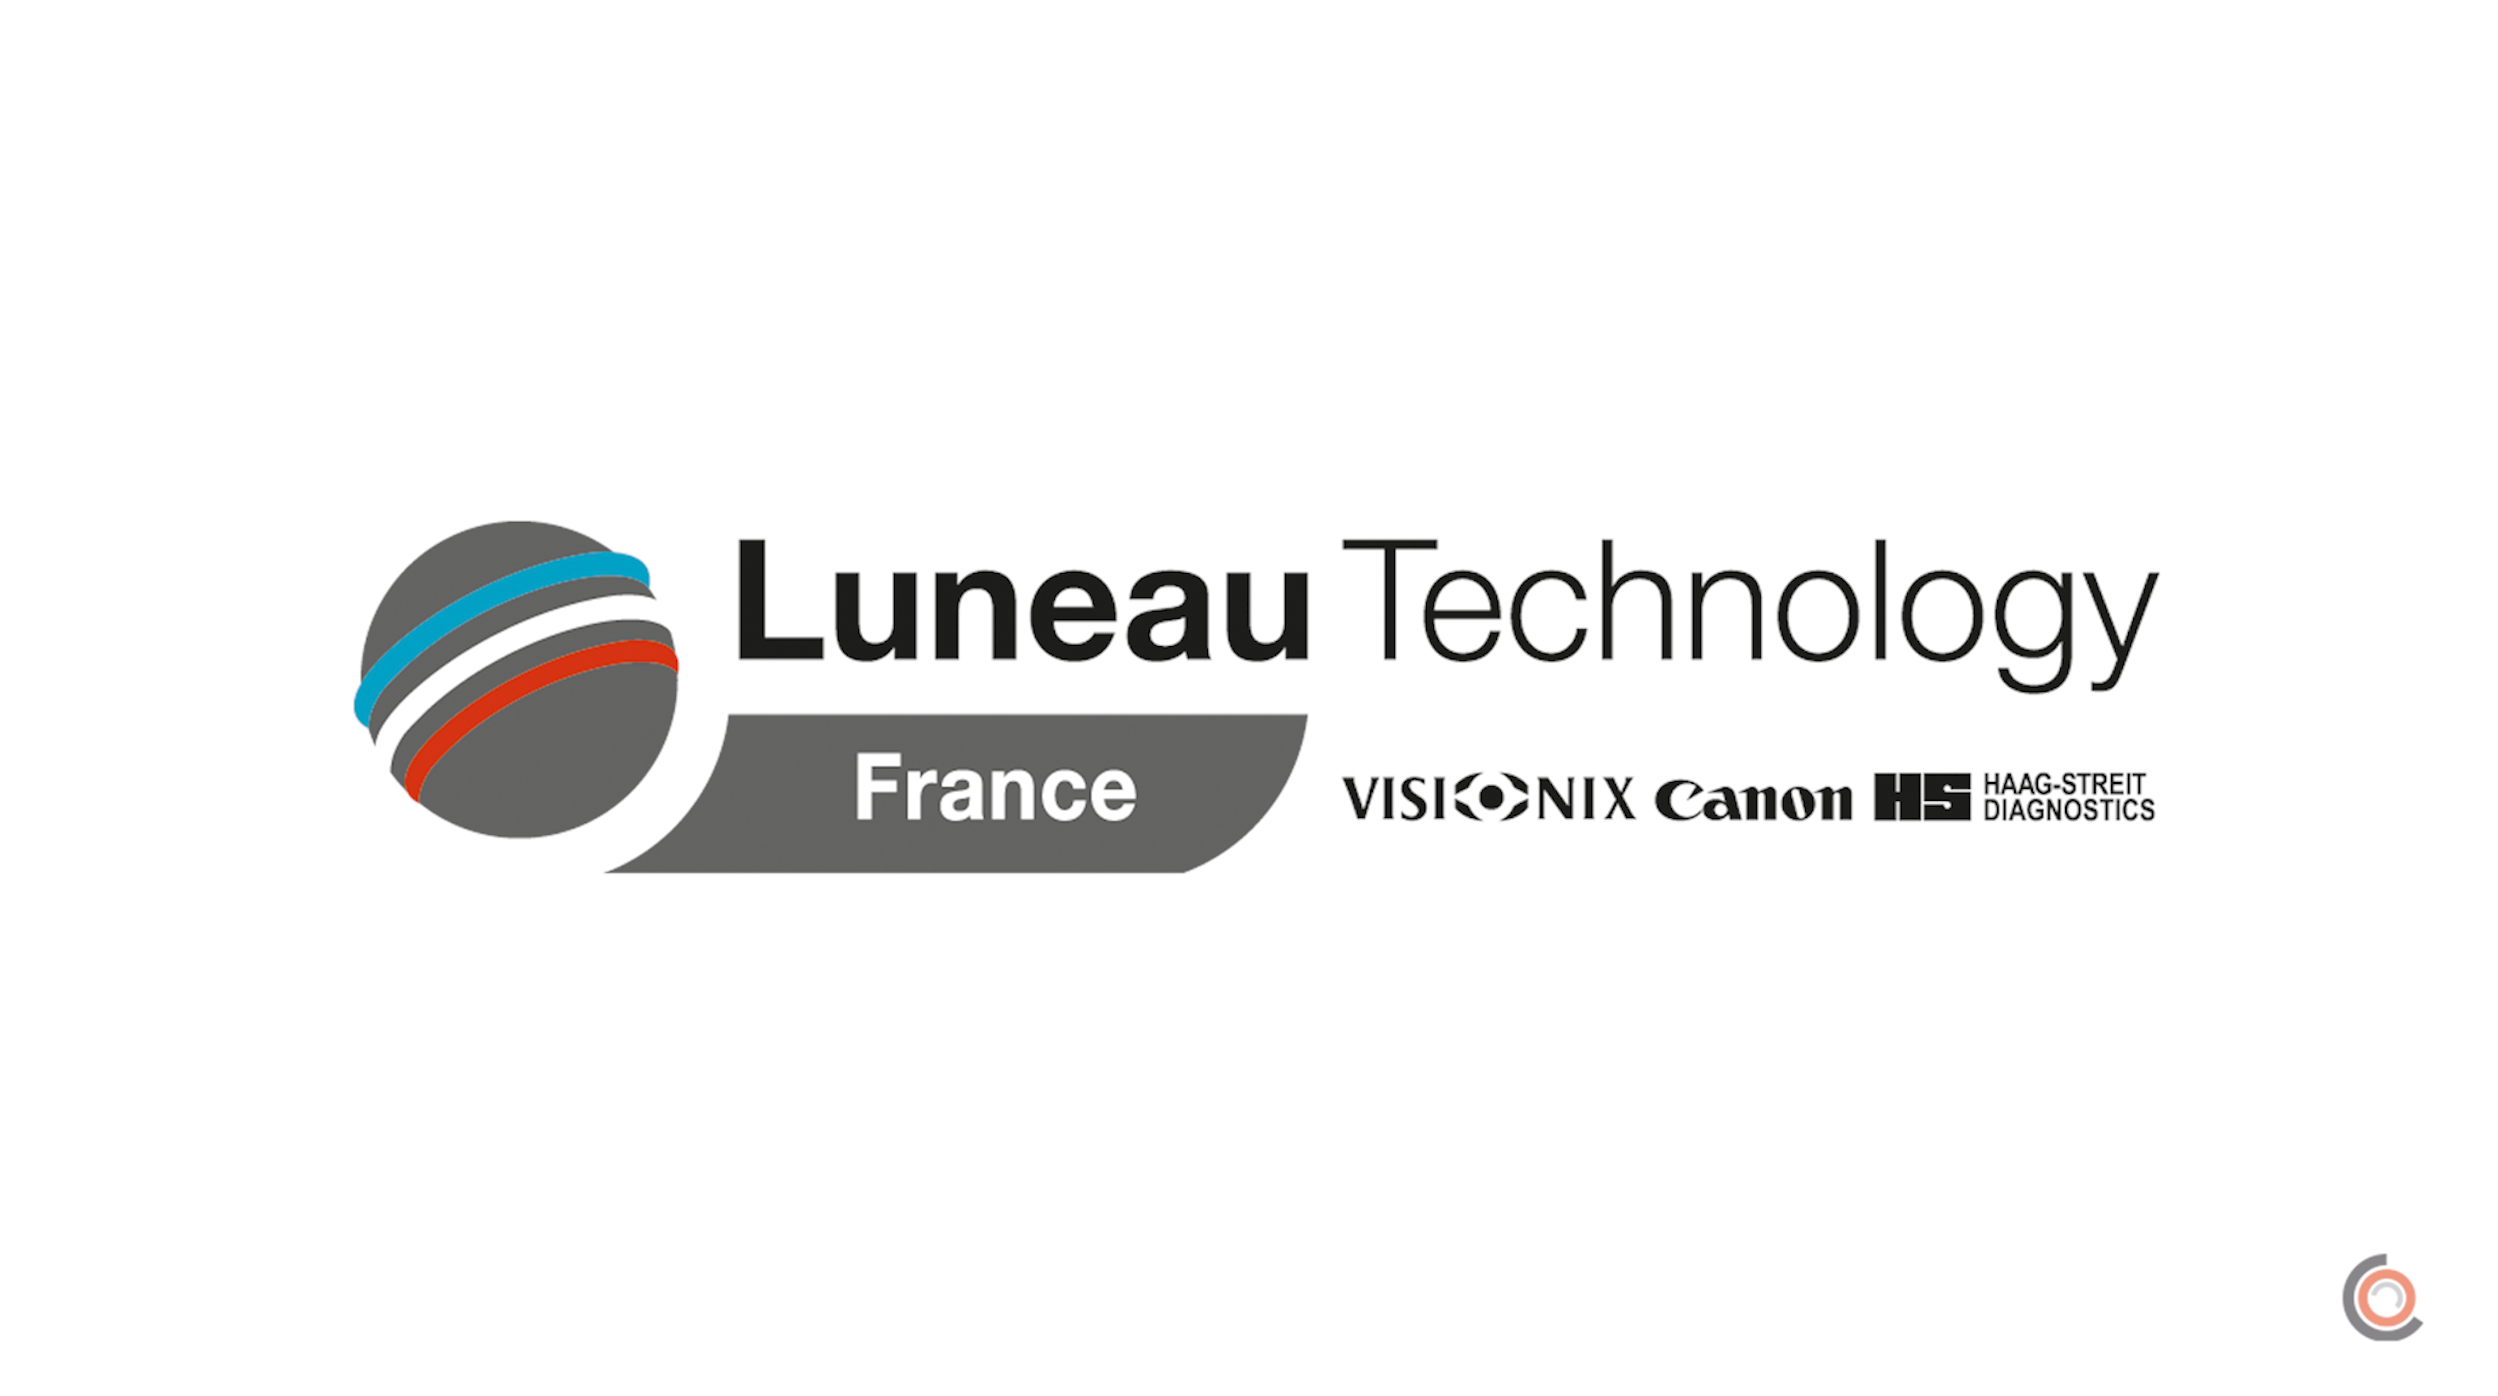 Exclu : rencontre avec le nouveau directeur général de Luneau Technology France